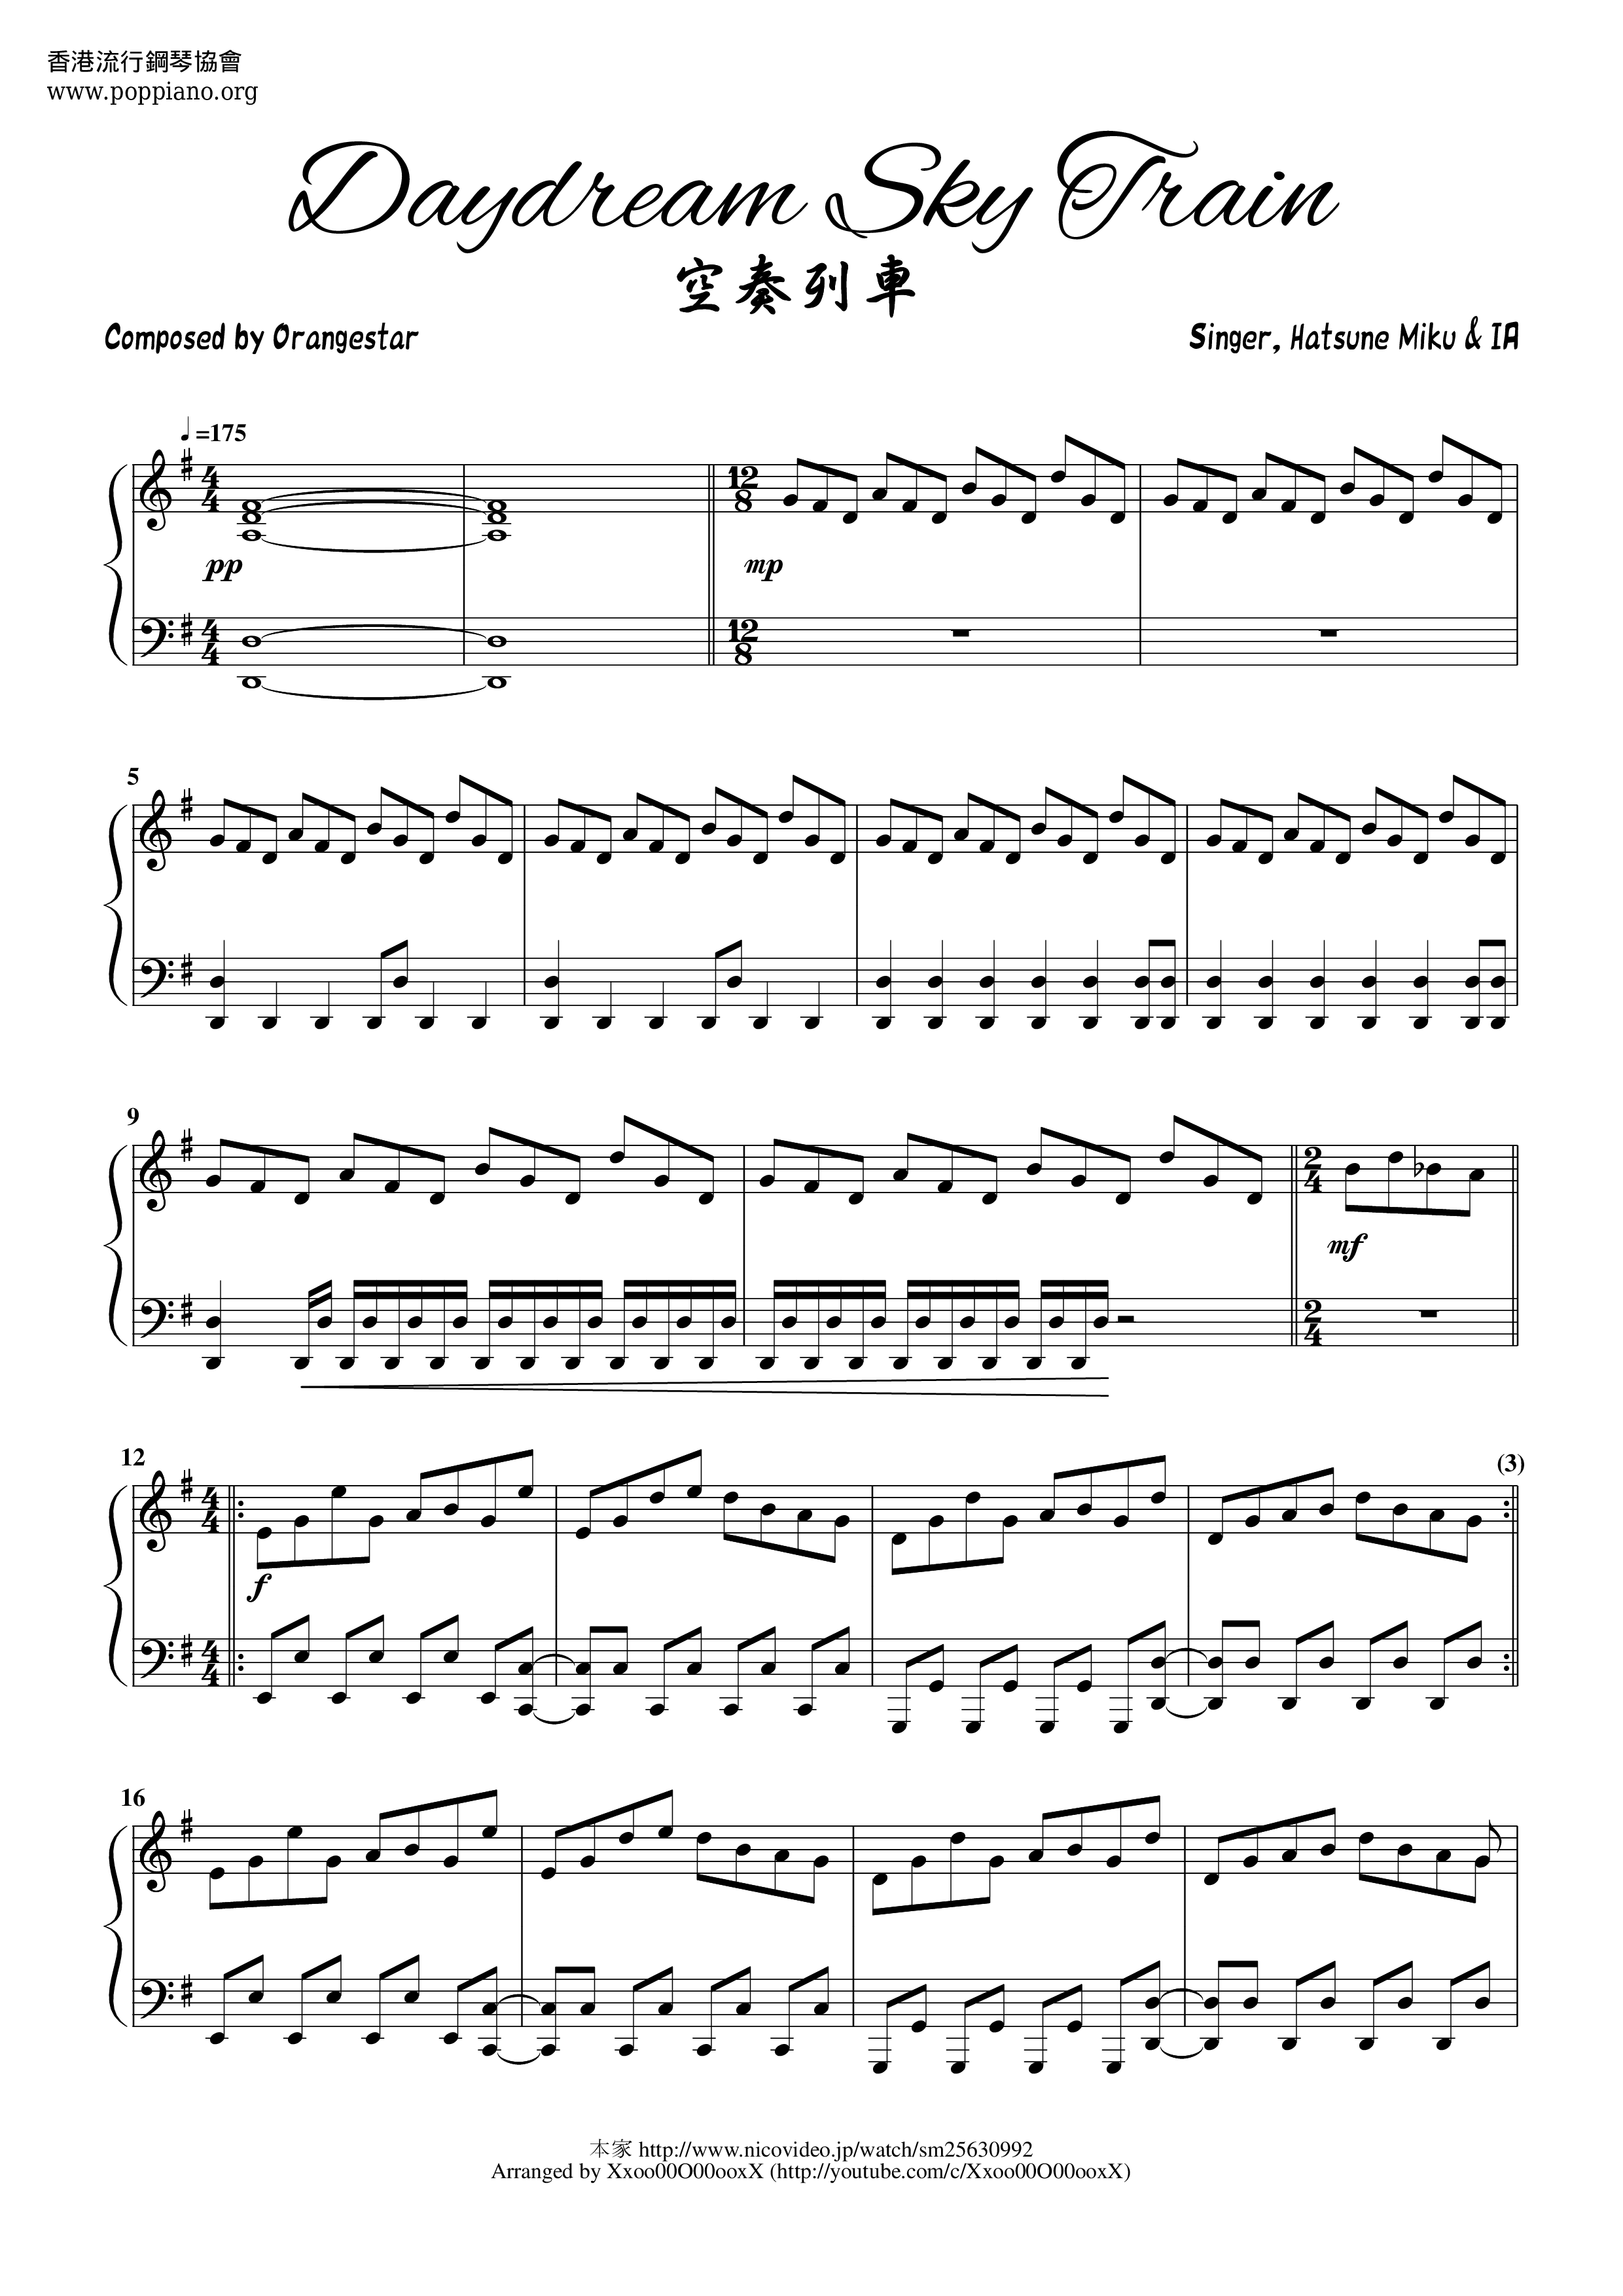 初音ミク 空奏列車 ピアノ譜pdf 香港ポップピアノ協会 無料pdf楽譜ダウンロード Gakufu